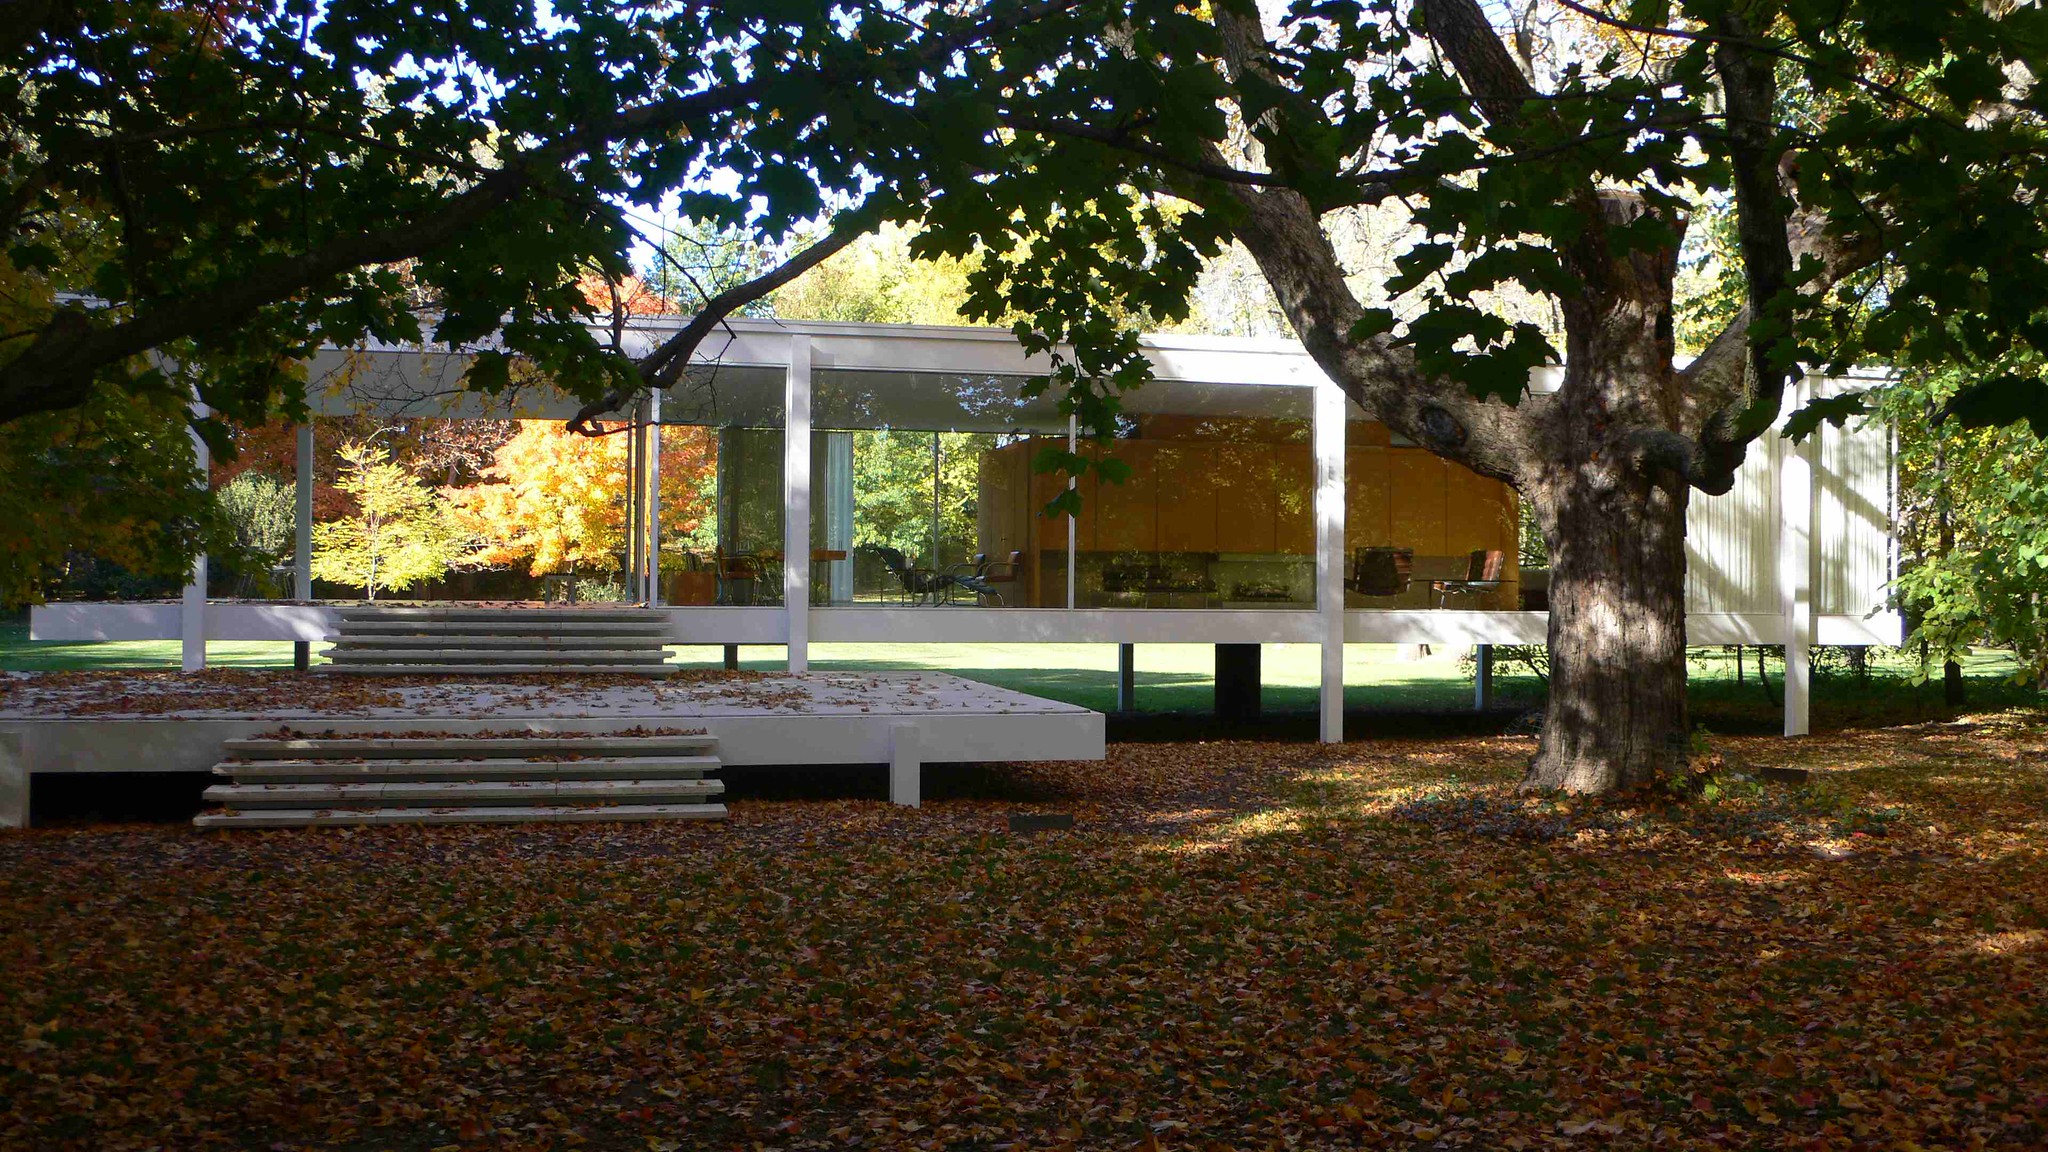 “高贵的单纯”——范斯沃斯住宅代表了谁的意志 - 经典建筑 - 树状模式